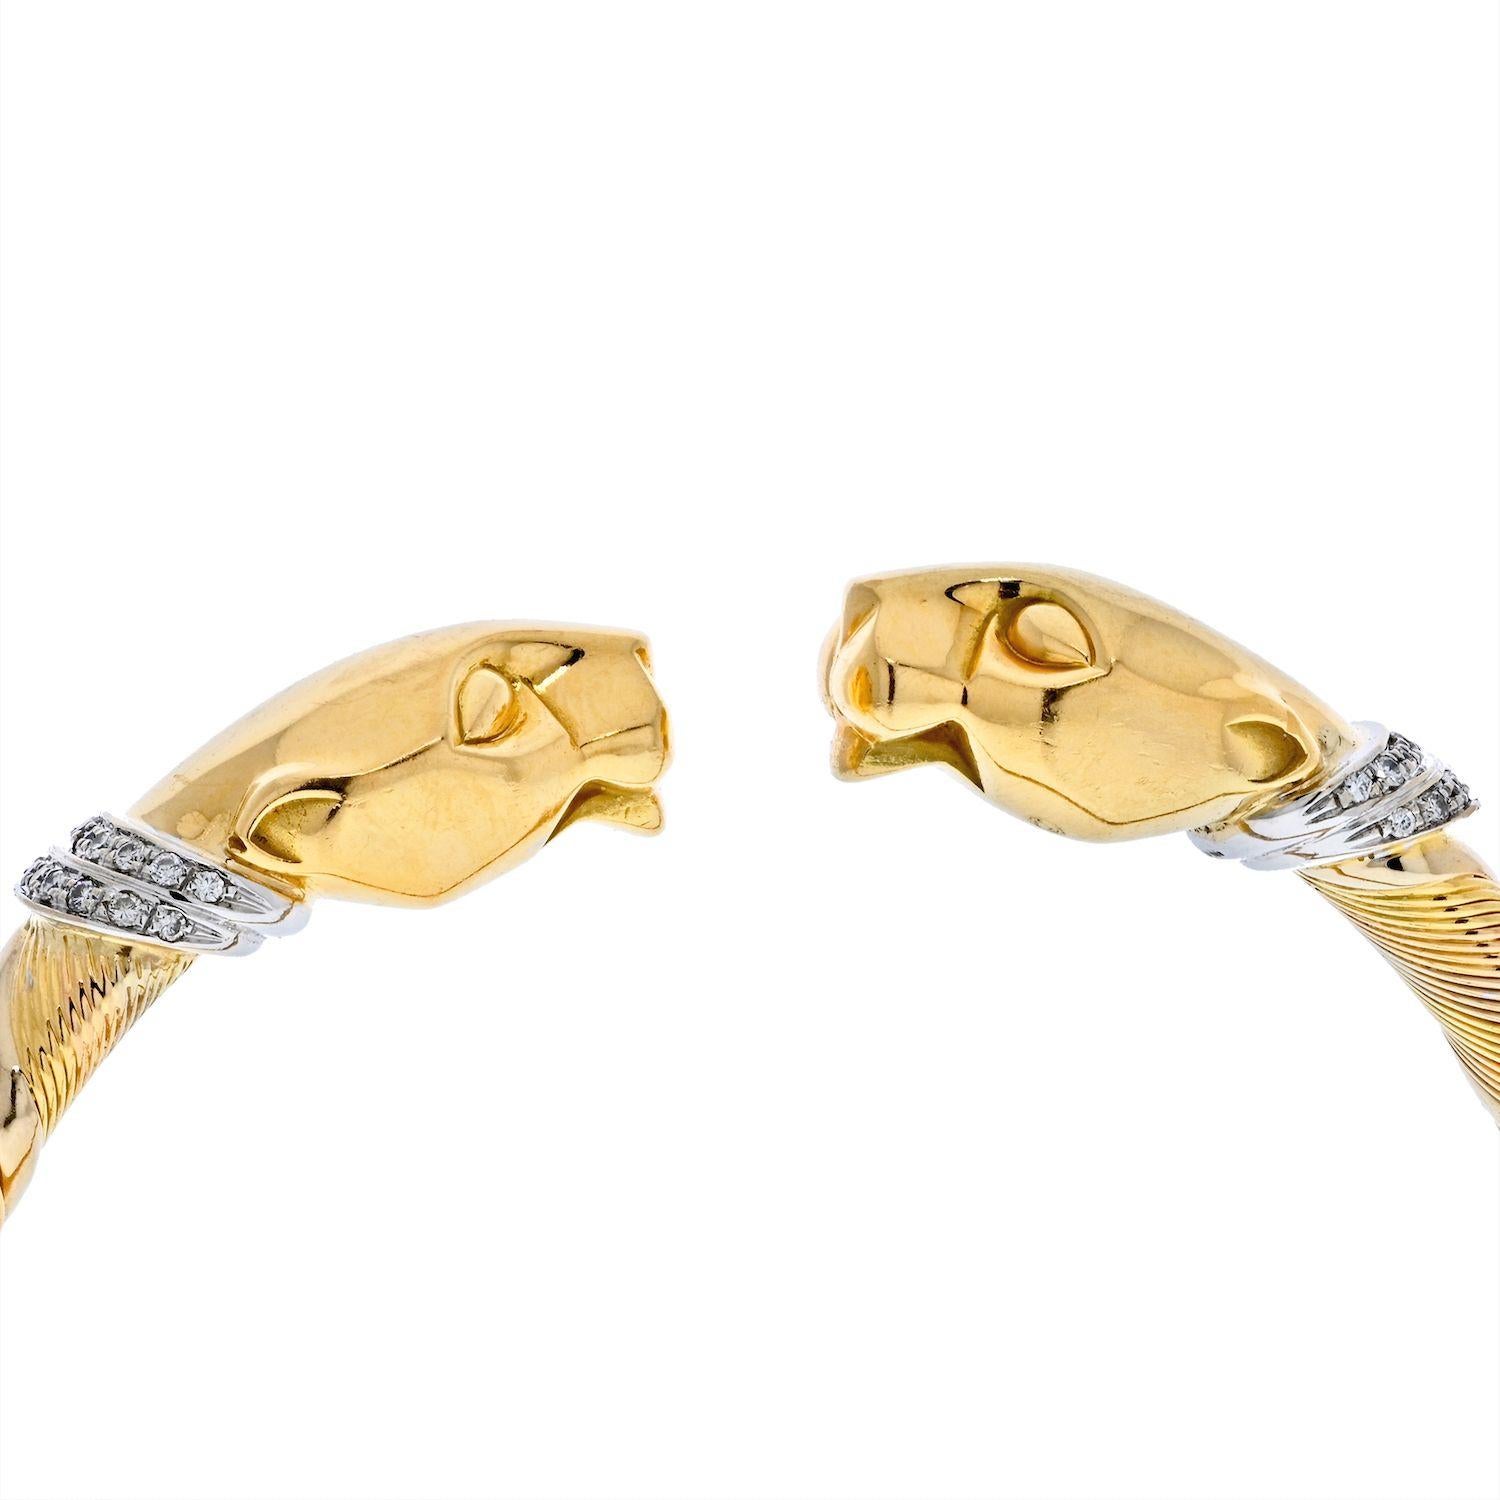 Seltenes Vintage-Armband Panthere De Cartier (Cougar) aus dreifarbigem 18-karätigem Gold in Spiralform. Dieses Armband hat zwei Pantherköpfe aus massivem Gelbgold an jedem Ende. Der Armreif ist ein 